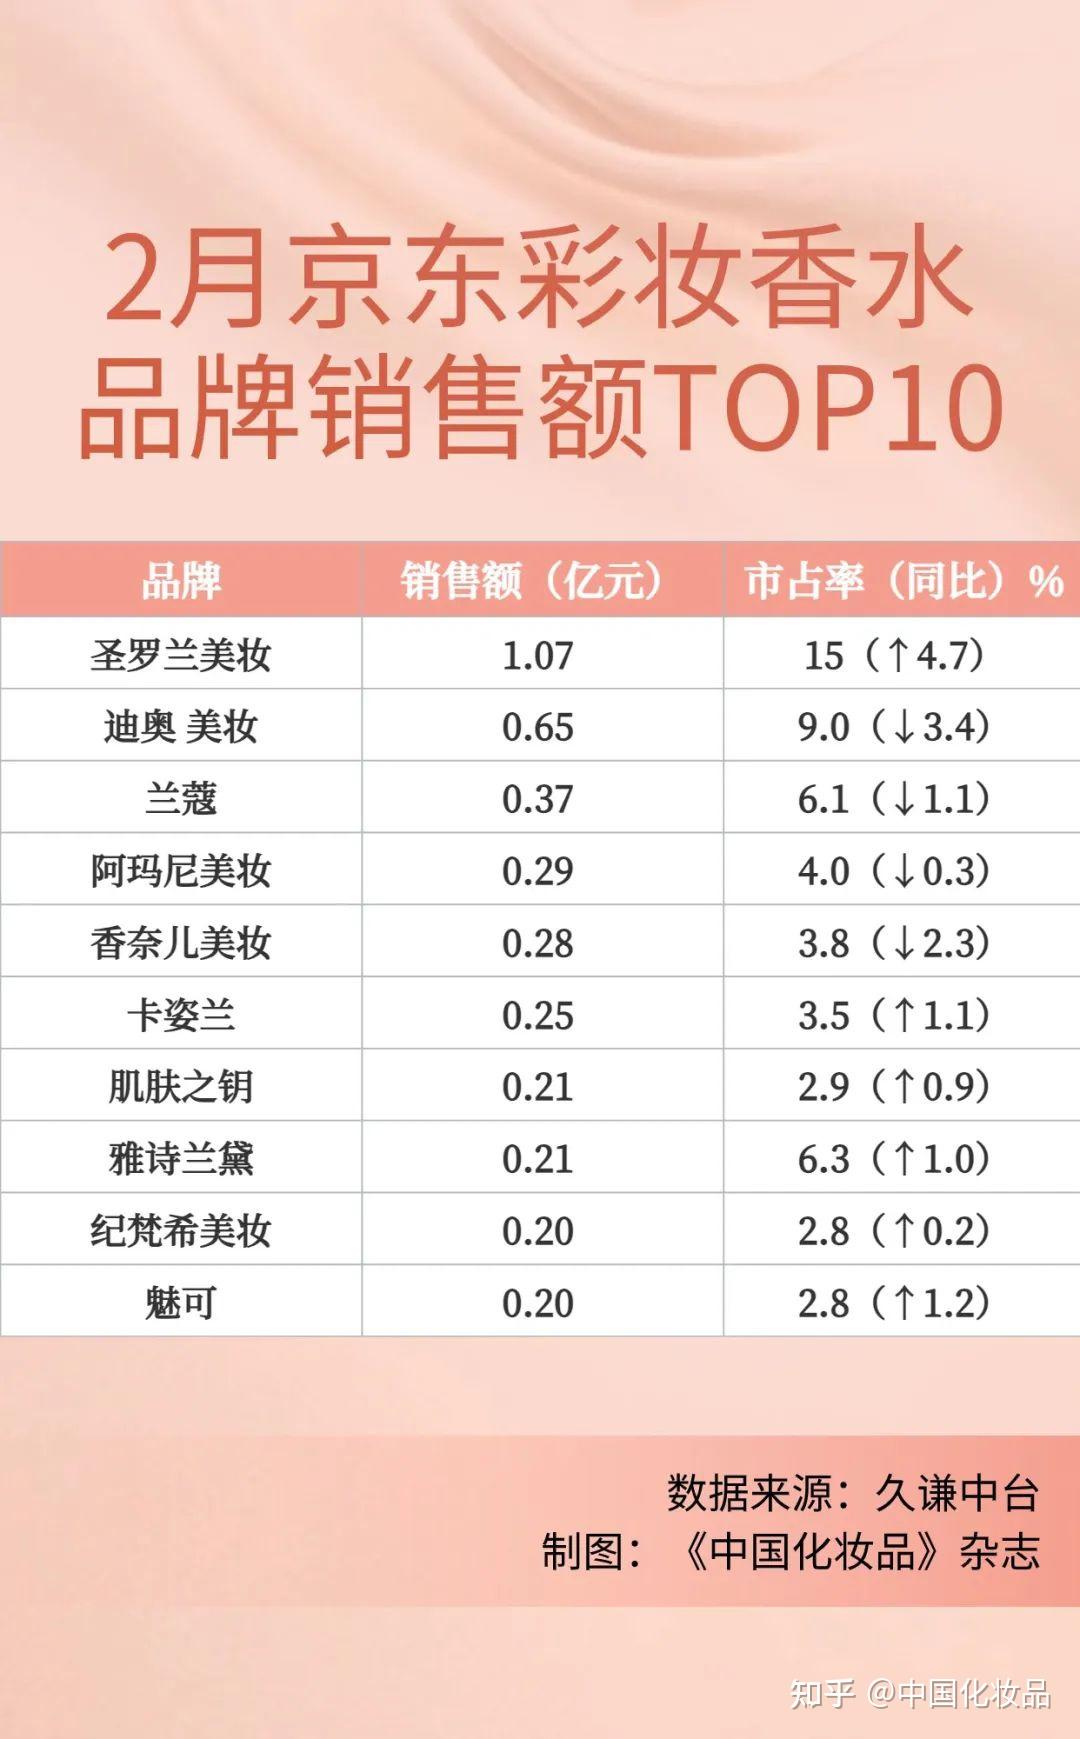 2月京东销售额top10的彩妆香水品牌为:圣罗兰美妆,迪奥美妆,兰蔻